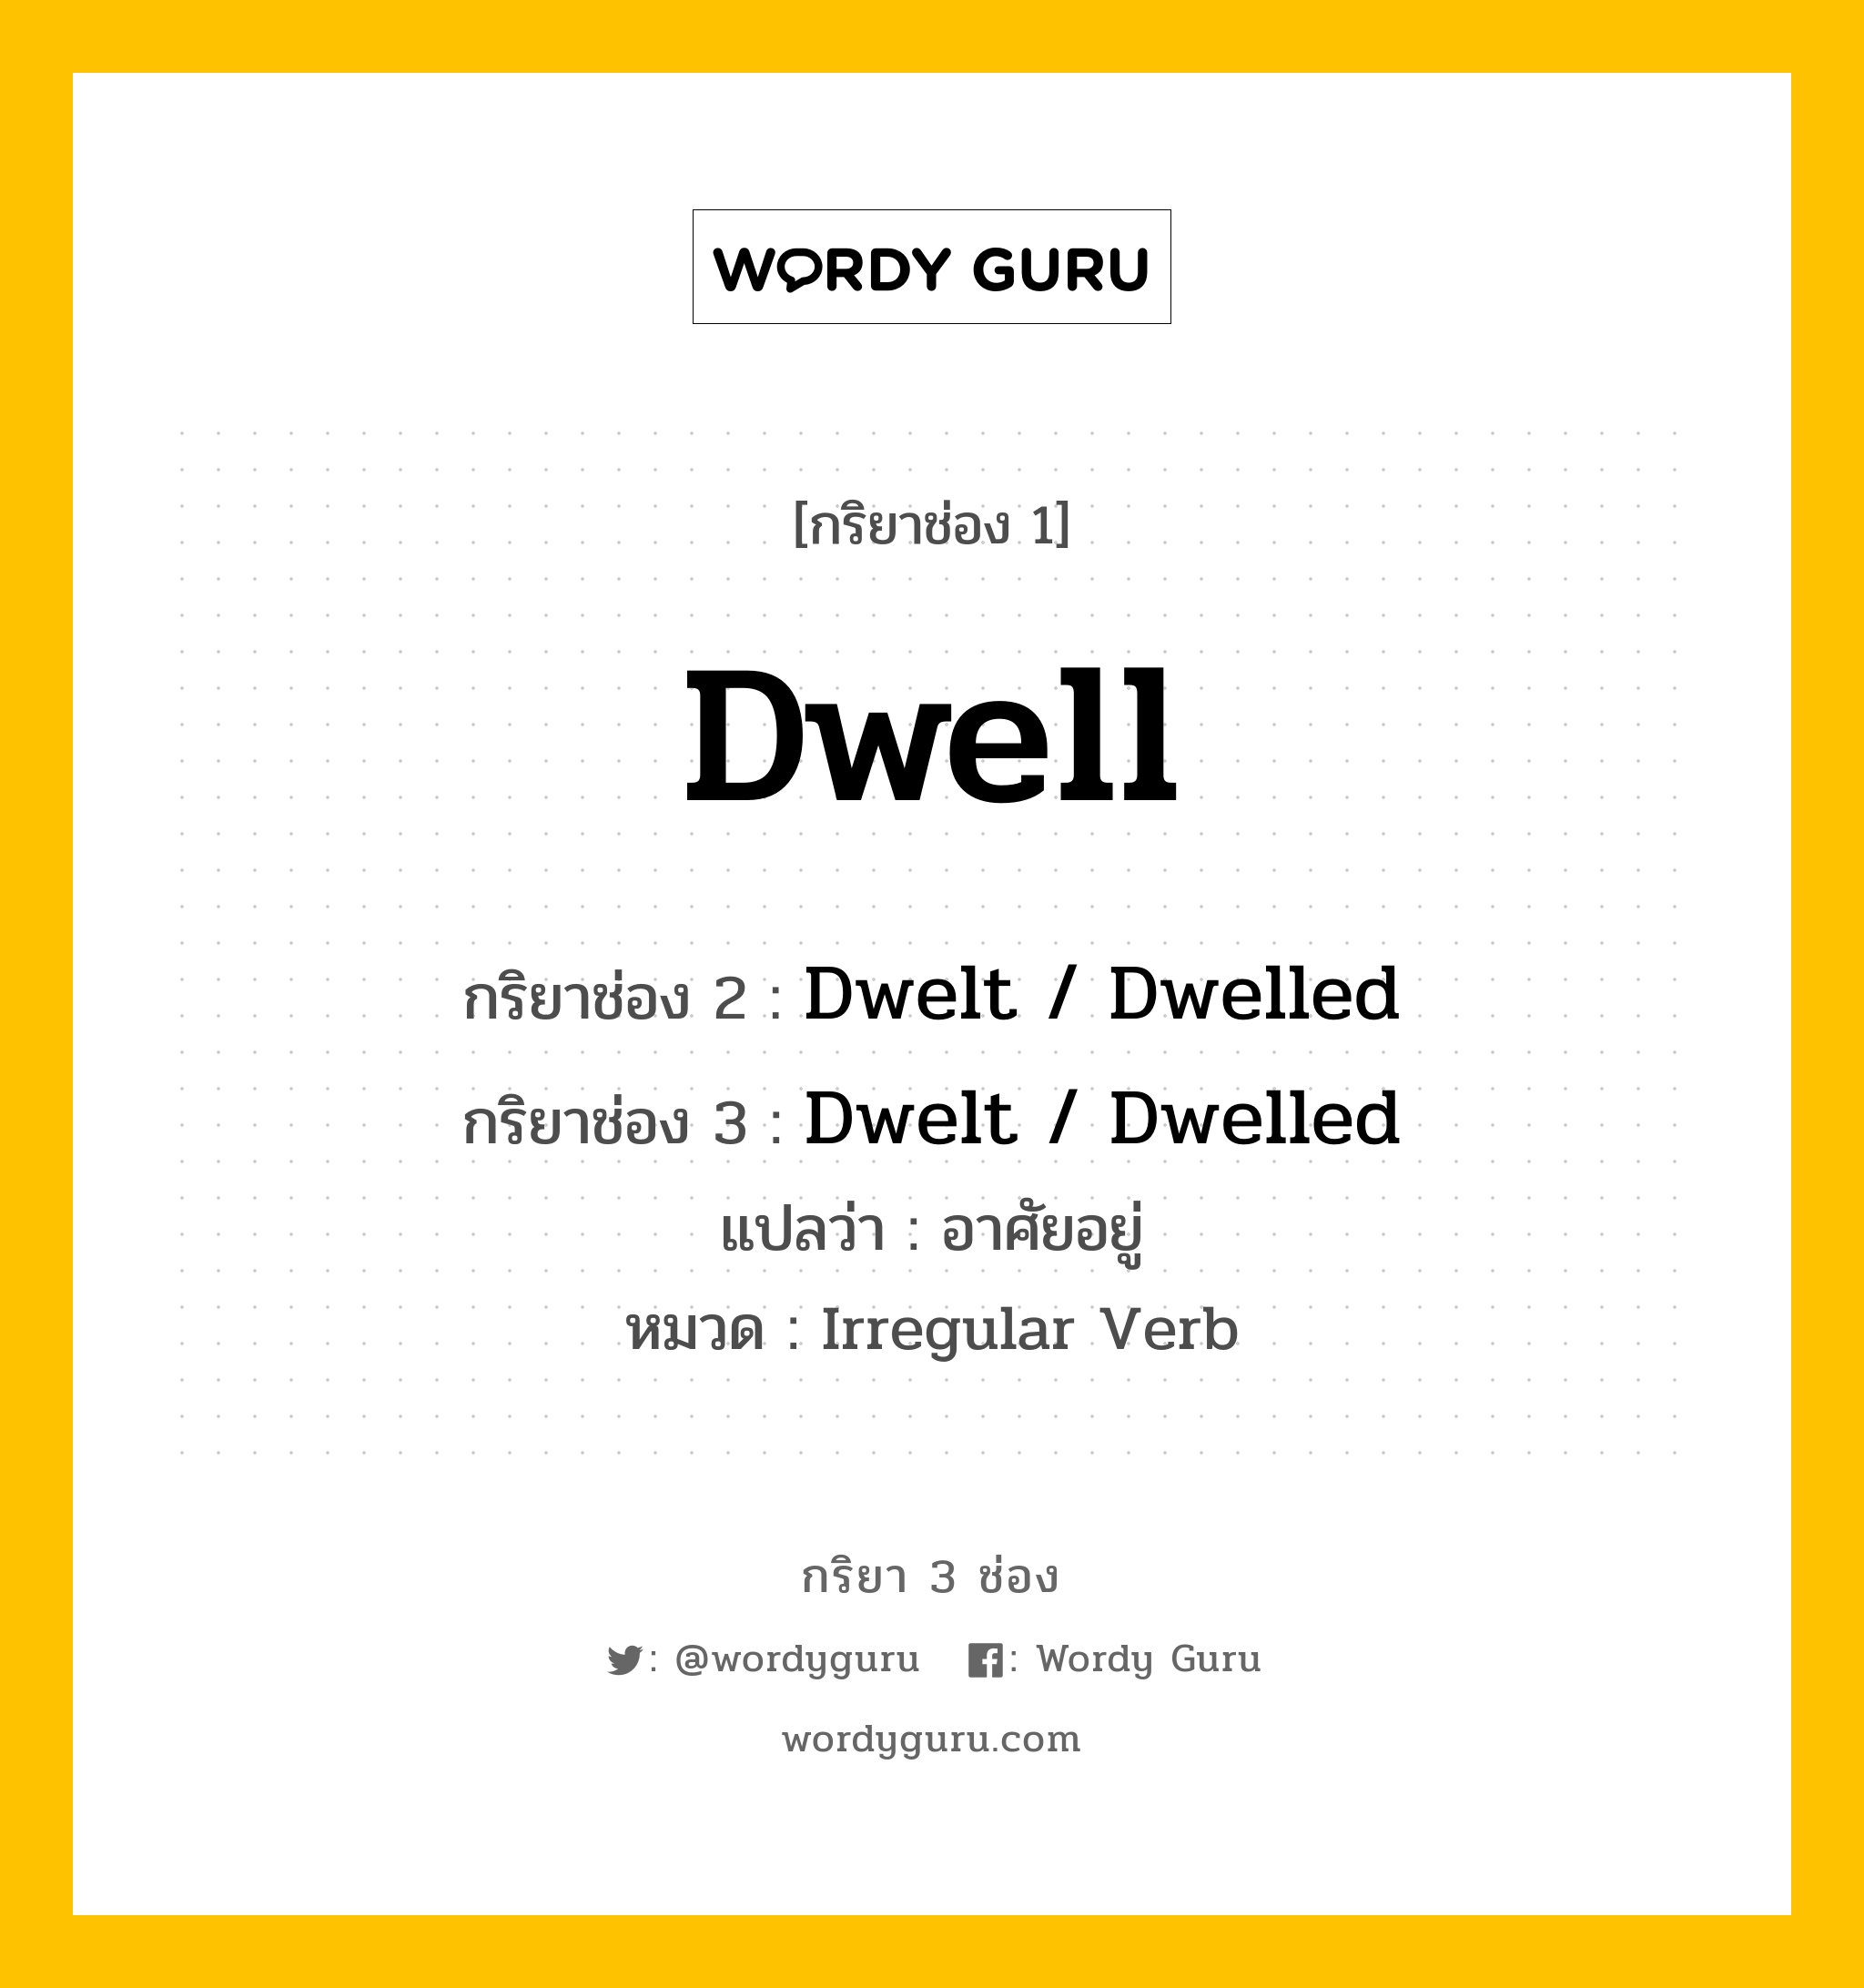 Dwell มีกริยา 3 ช่องอะไรบ้าง? คำศัพท์ในกลุ่มประเภท Irregular Verb, กริยาช่อง 1 Dwell กริยาช่อง 2 Dwelt / Dwelled กริยาช่อง 3 Dwelt / Dwelled แปลว่า อาศัยอยู่ หมวด Irregular Verb หมวด Irregular Verb